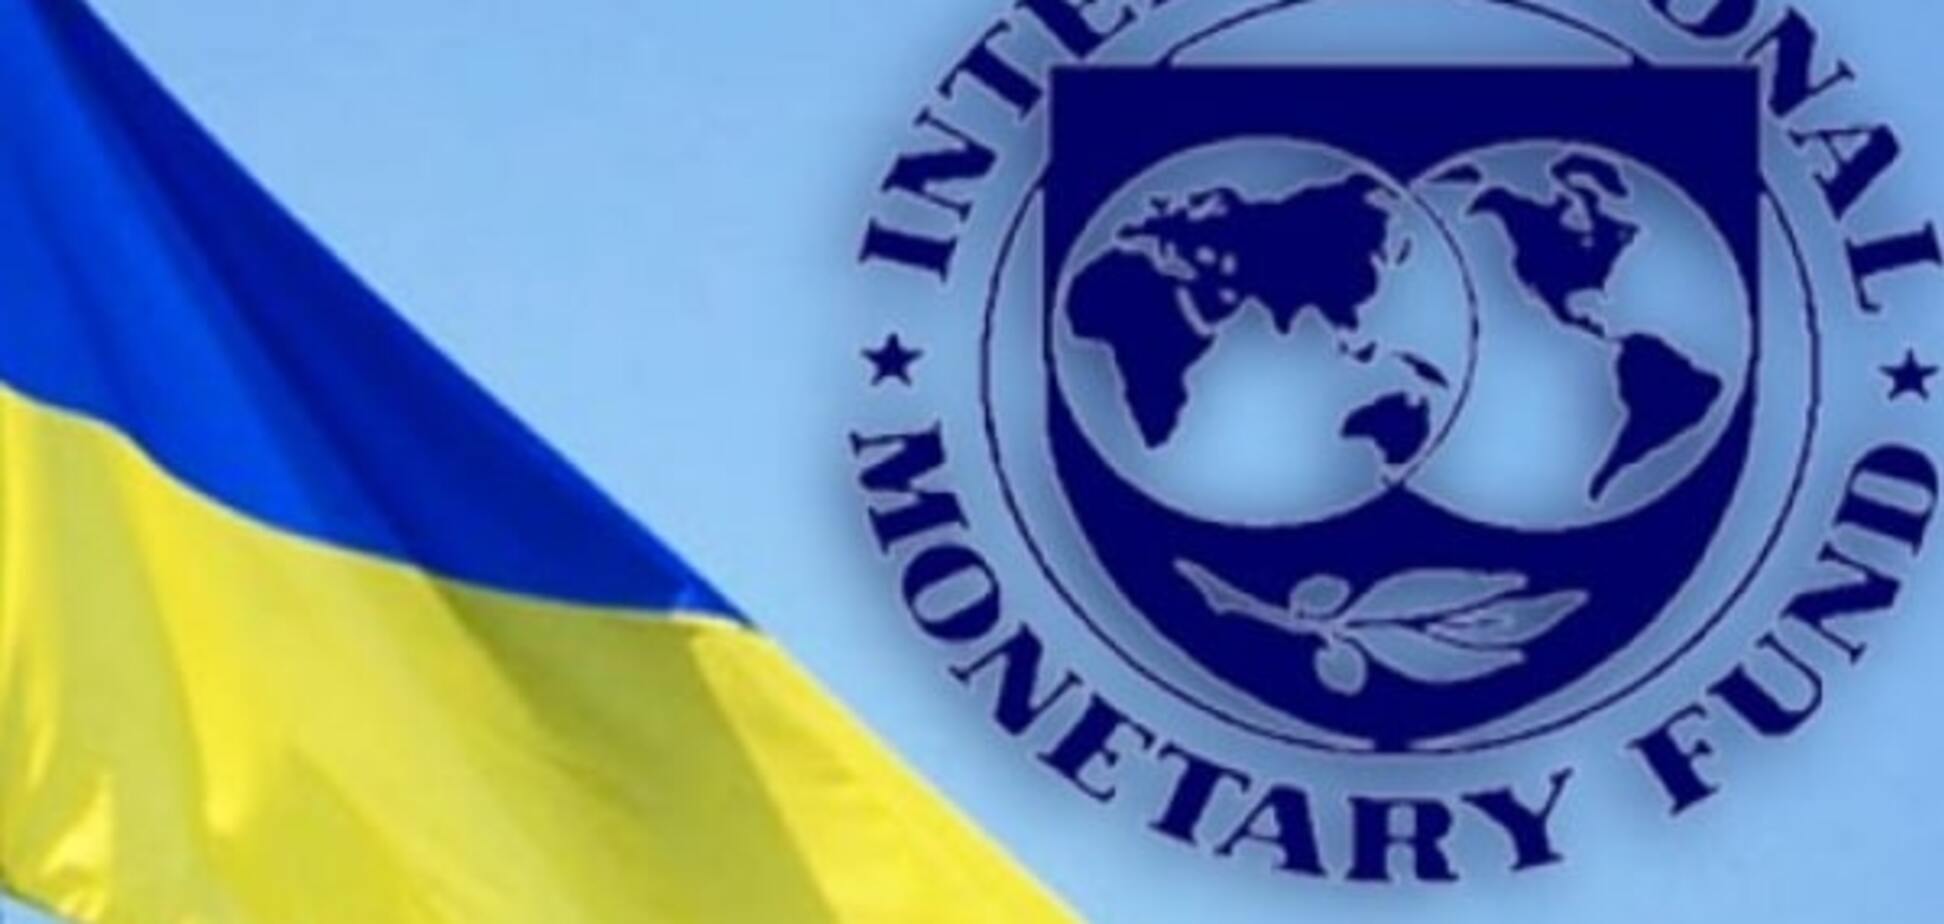 У МВФ з'явилися серйозні претензії до України - ЗМІ